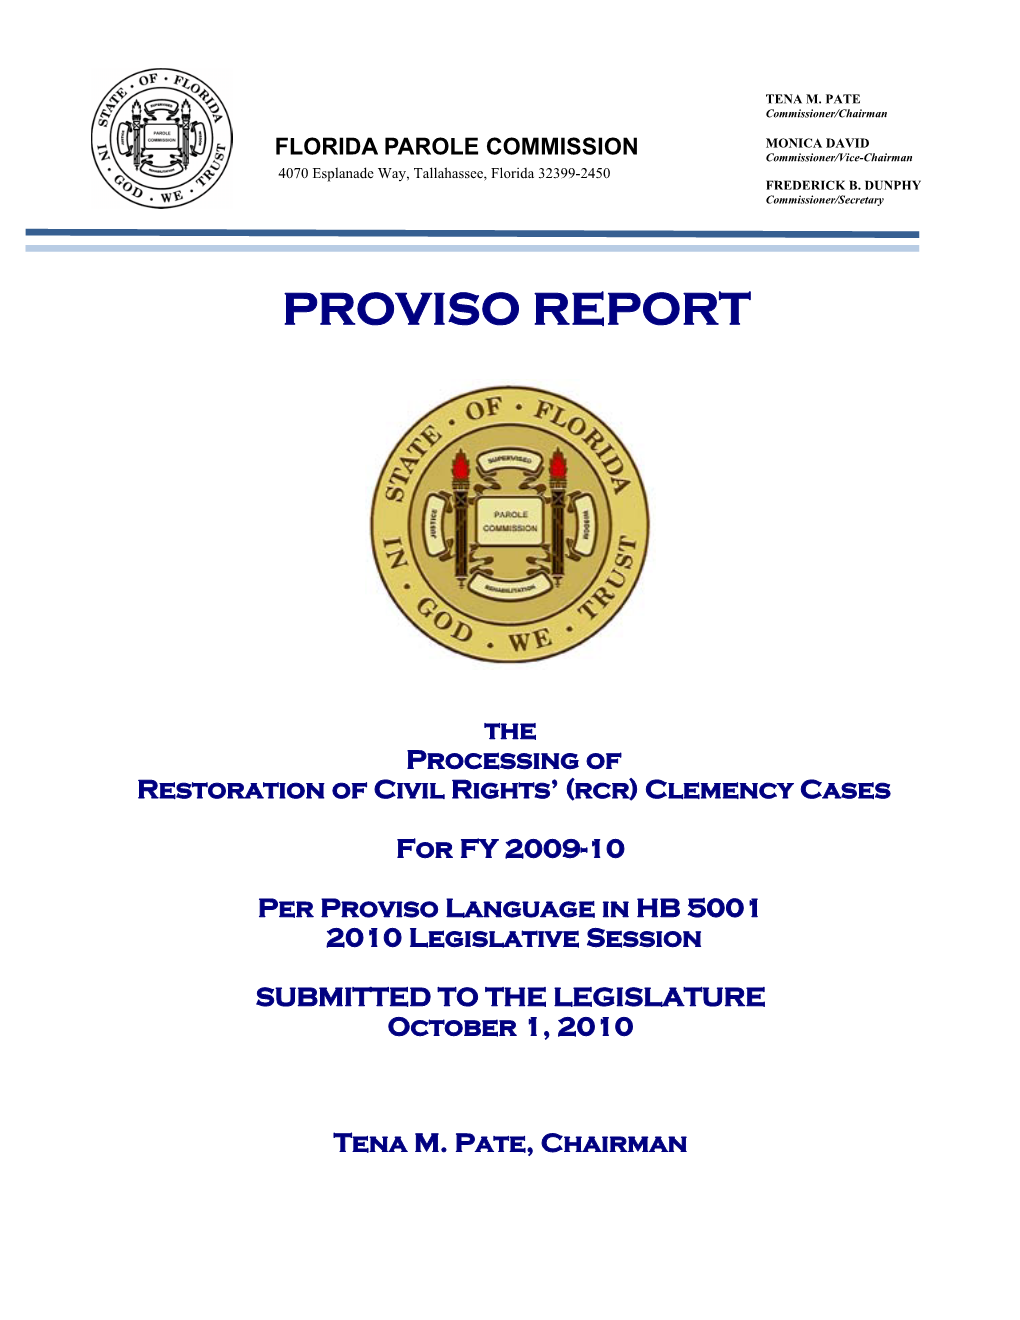 FY 2009-10 Proviso Report